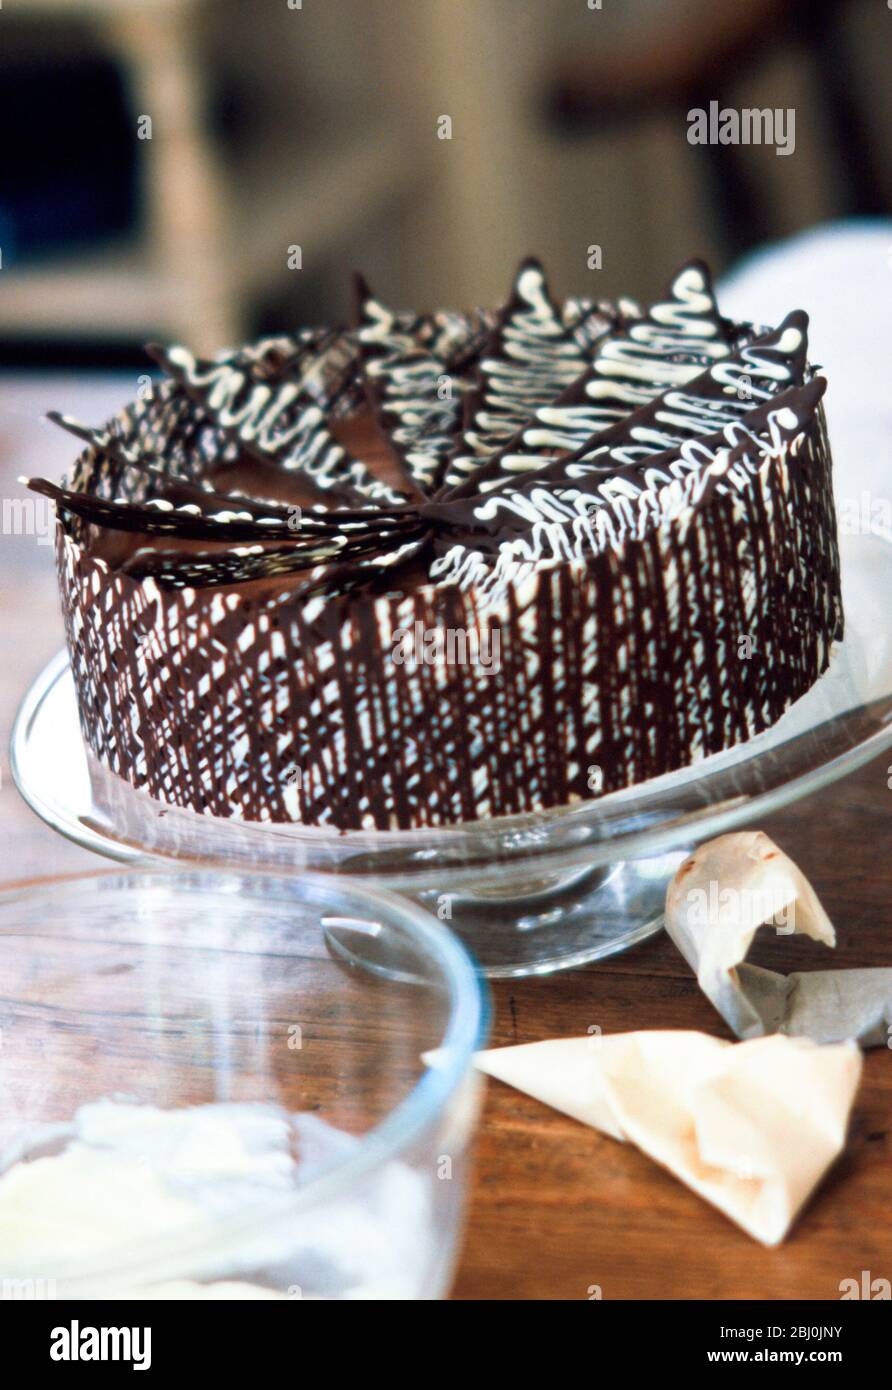 Torte au chocolat dans le cadre de la cuisine - Banque D'Images